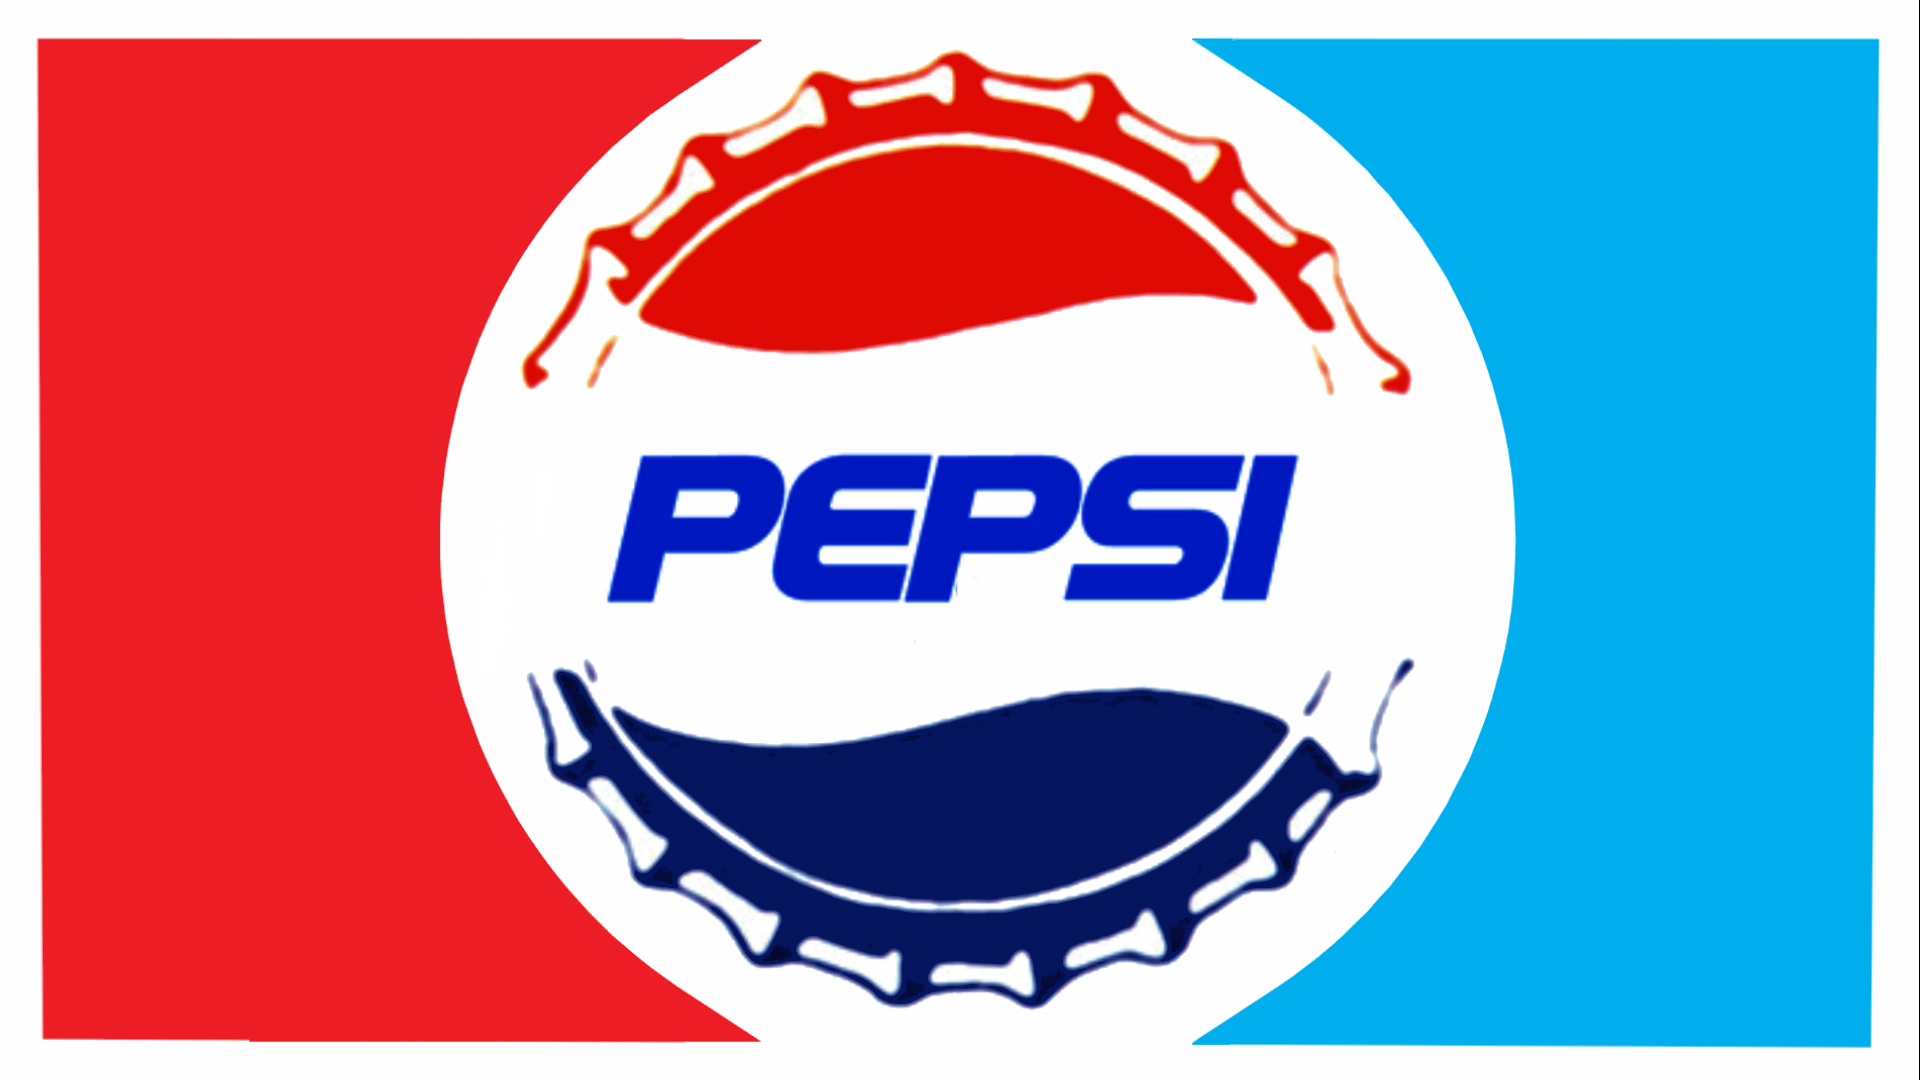 Pepsi Puter Wallpaper Desktop Background Id